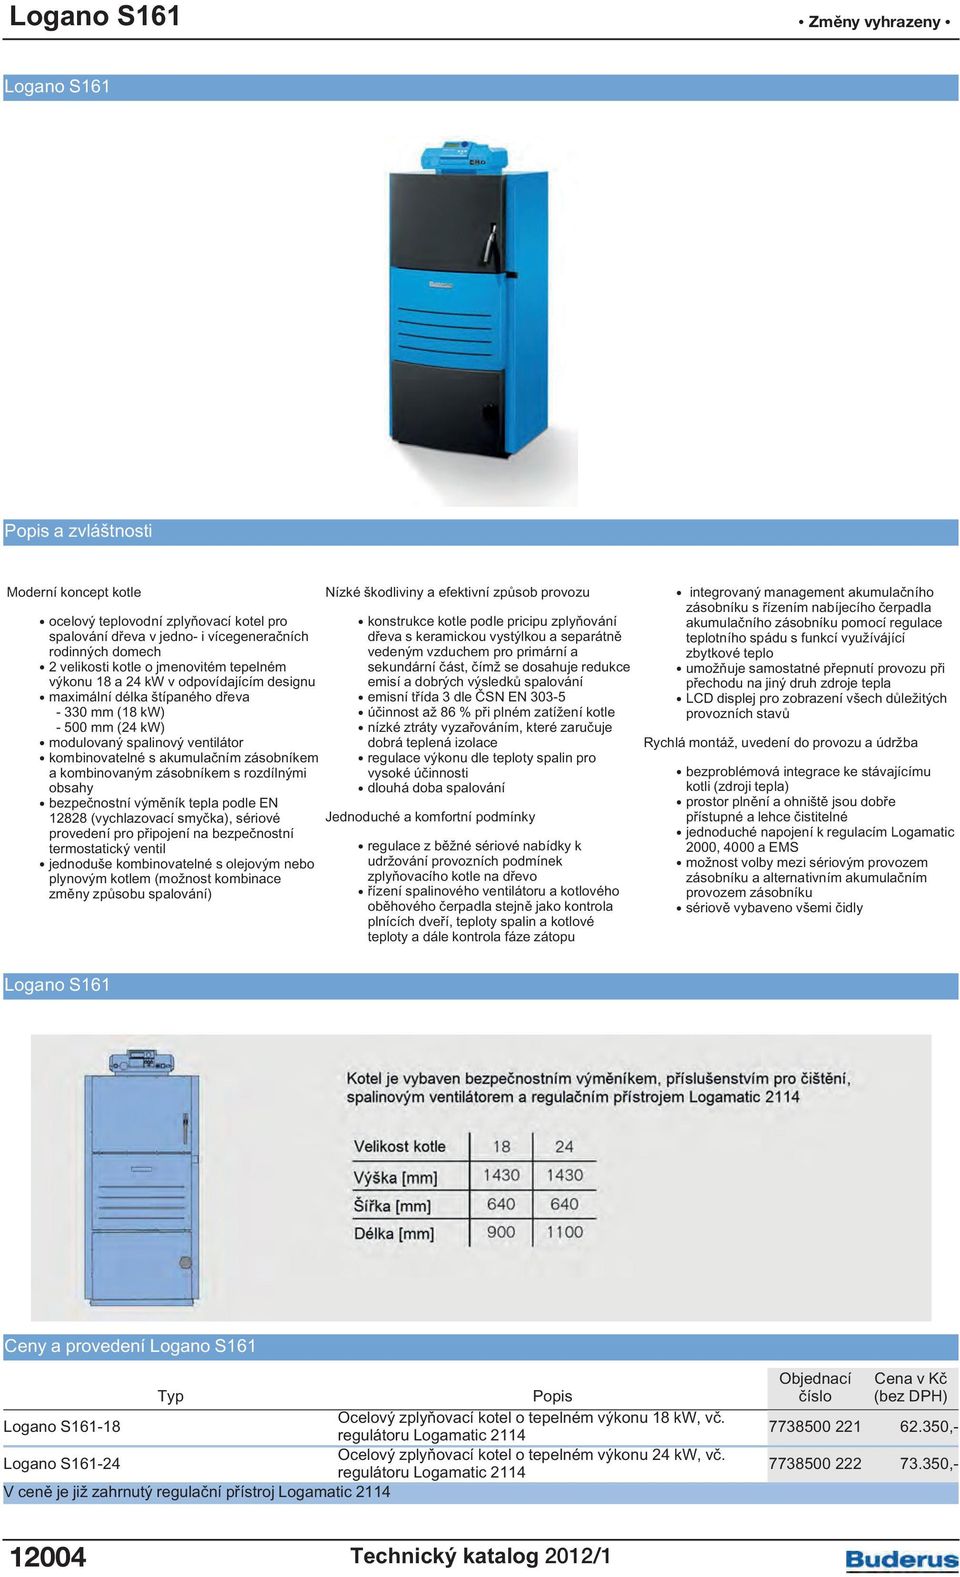 kombinovaným zásobníkem s rozdílnými obsahy bezpečnostní výměník tepla podle EN 12828 (vychlazovací smyčka), sériové provedení pro připojení na bezpečnostní termostatický ventil jednoduše